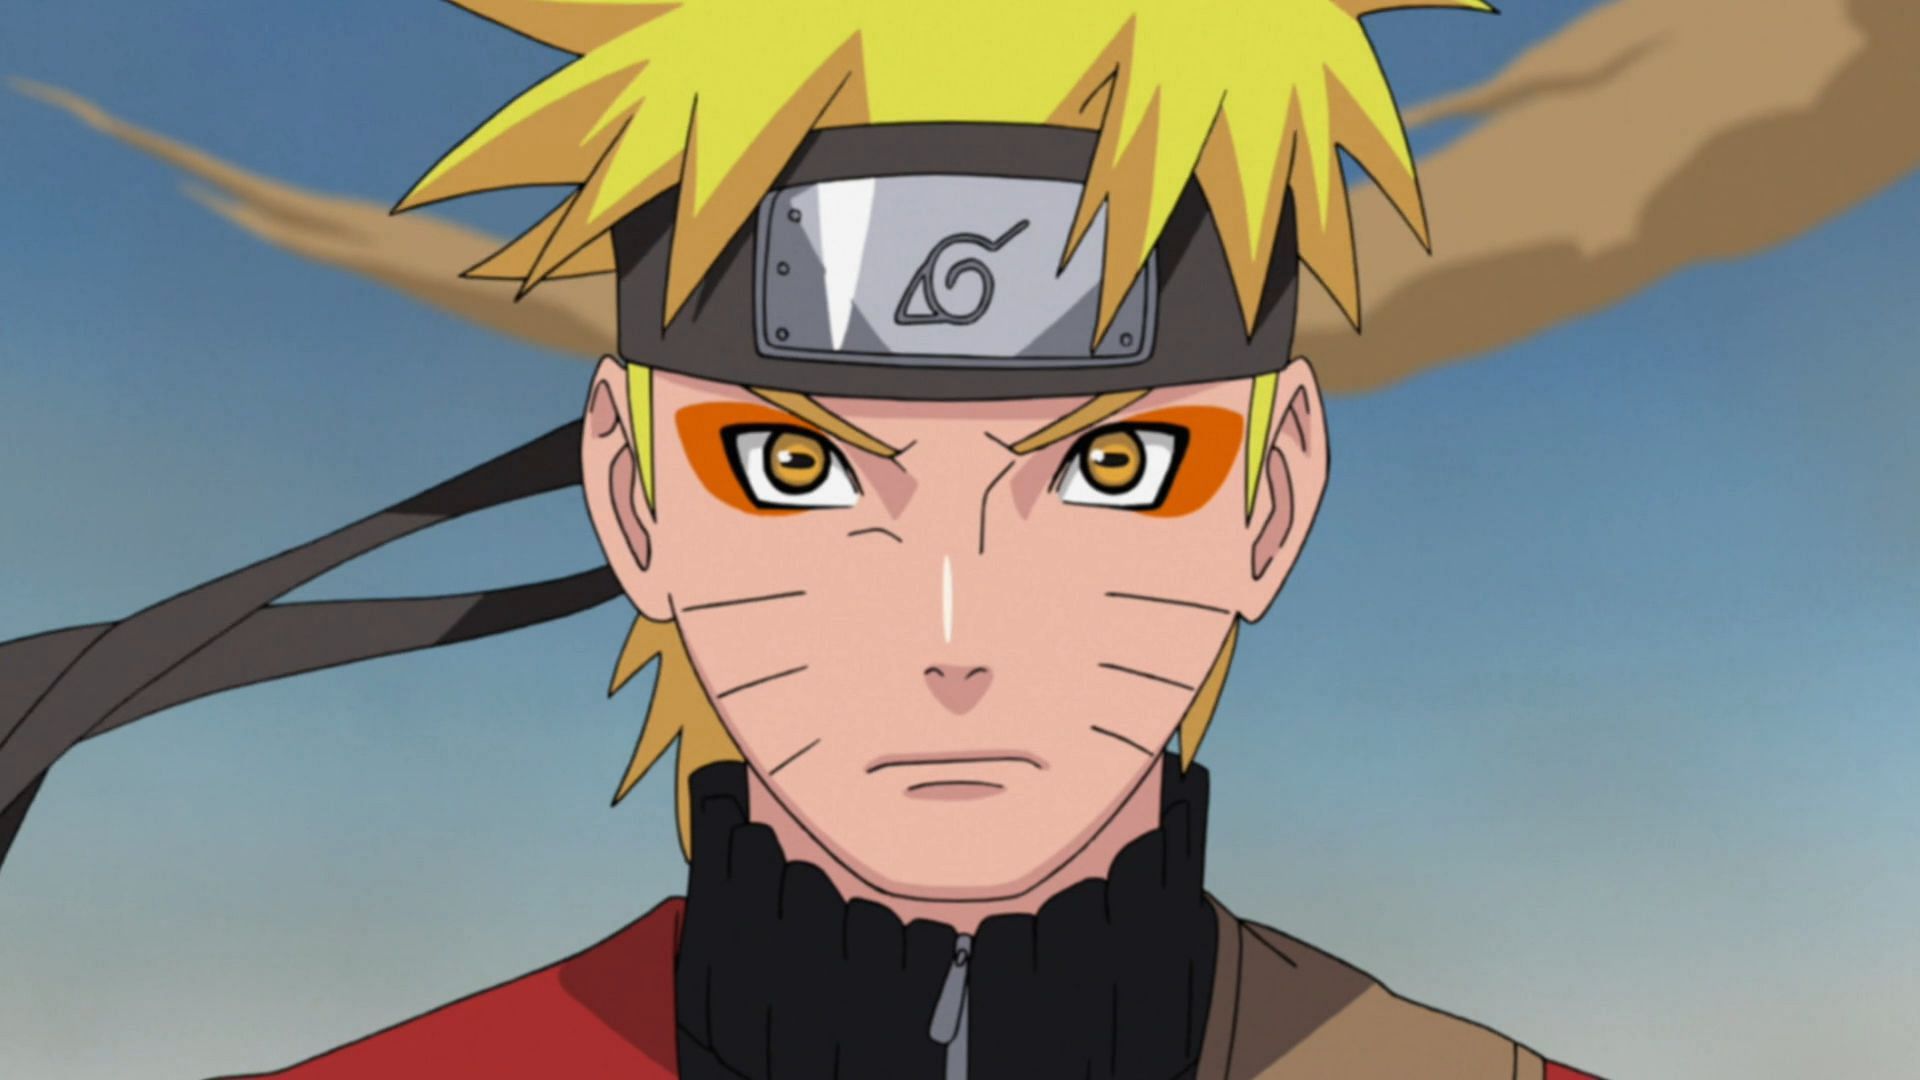 Naruto Uzumaki as seen in Naruto Shippuden (Image via Studio Pierrot)